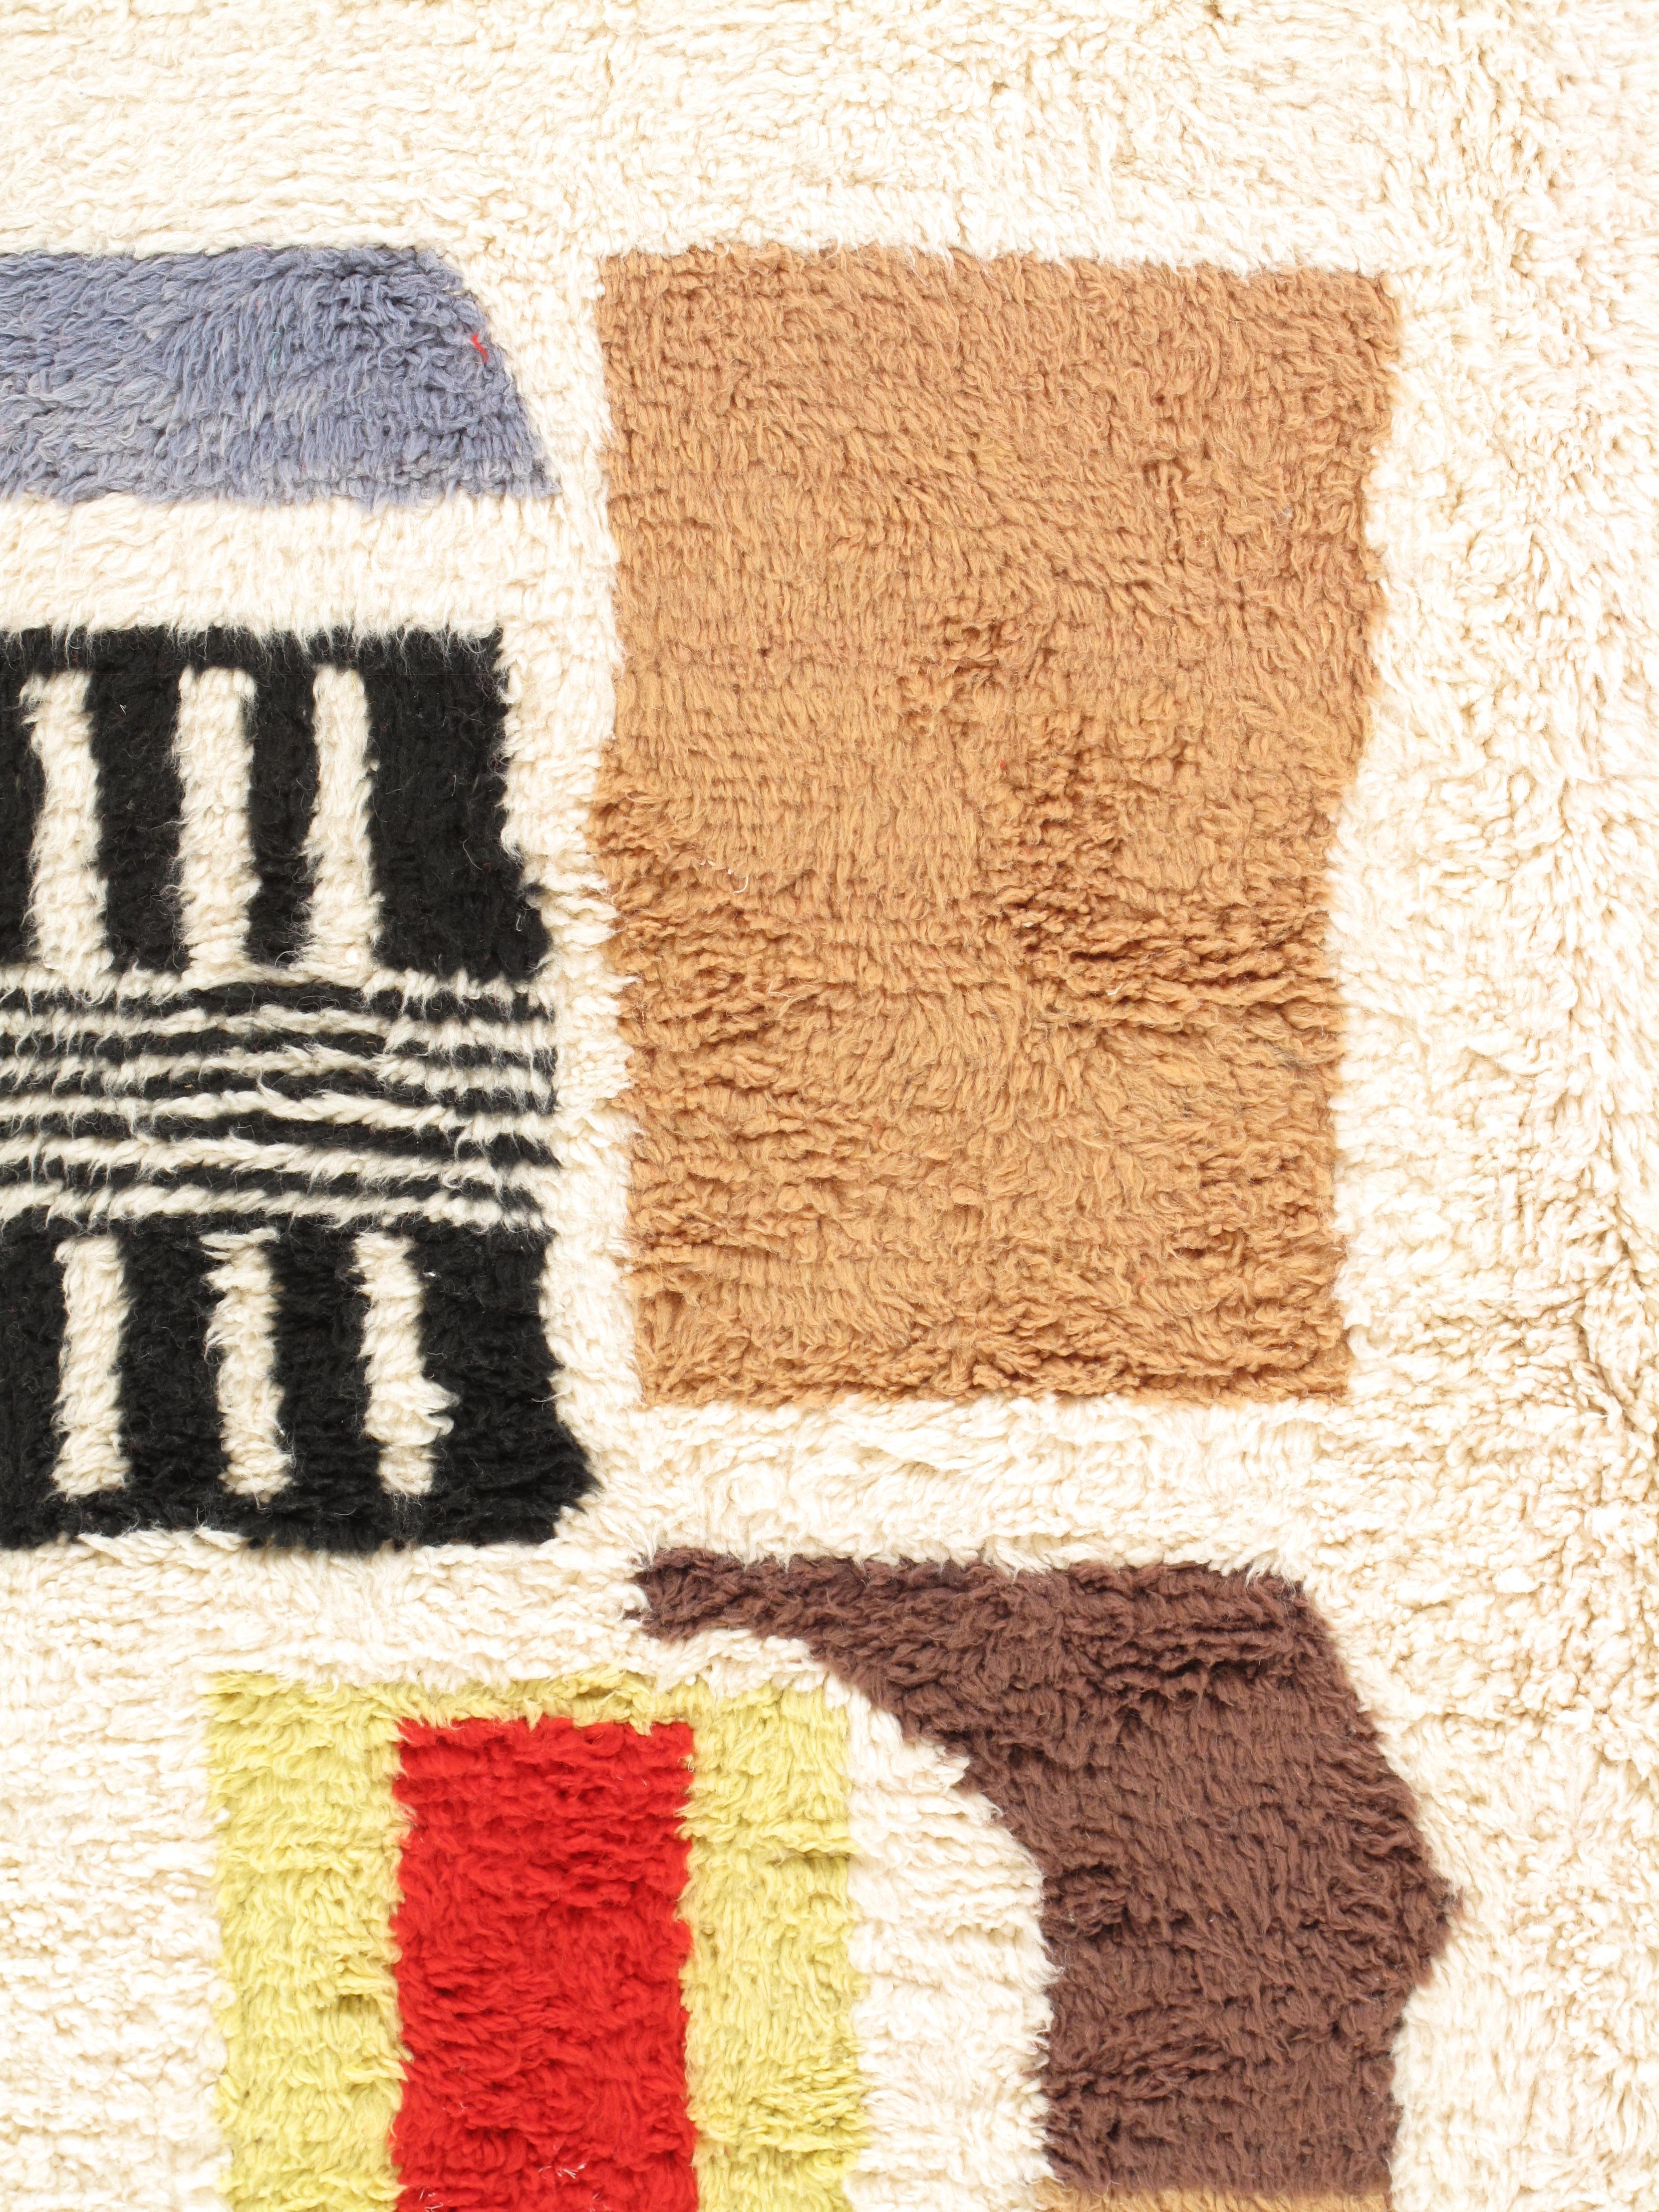 Les tapis marocains vintage sont des trésors intemporels qui incarnent des siècles de tradition et d'artisanat. Chaque tapis raconte une histoire, celle de la culture marocaine, de l'histoire et des mains habiles qui l'ont tissé. Ces tapis se